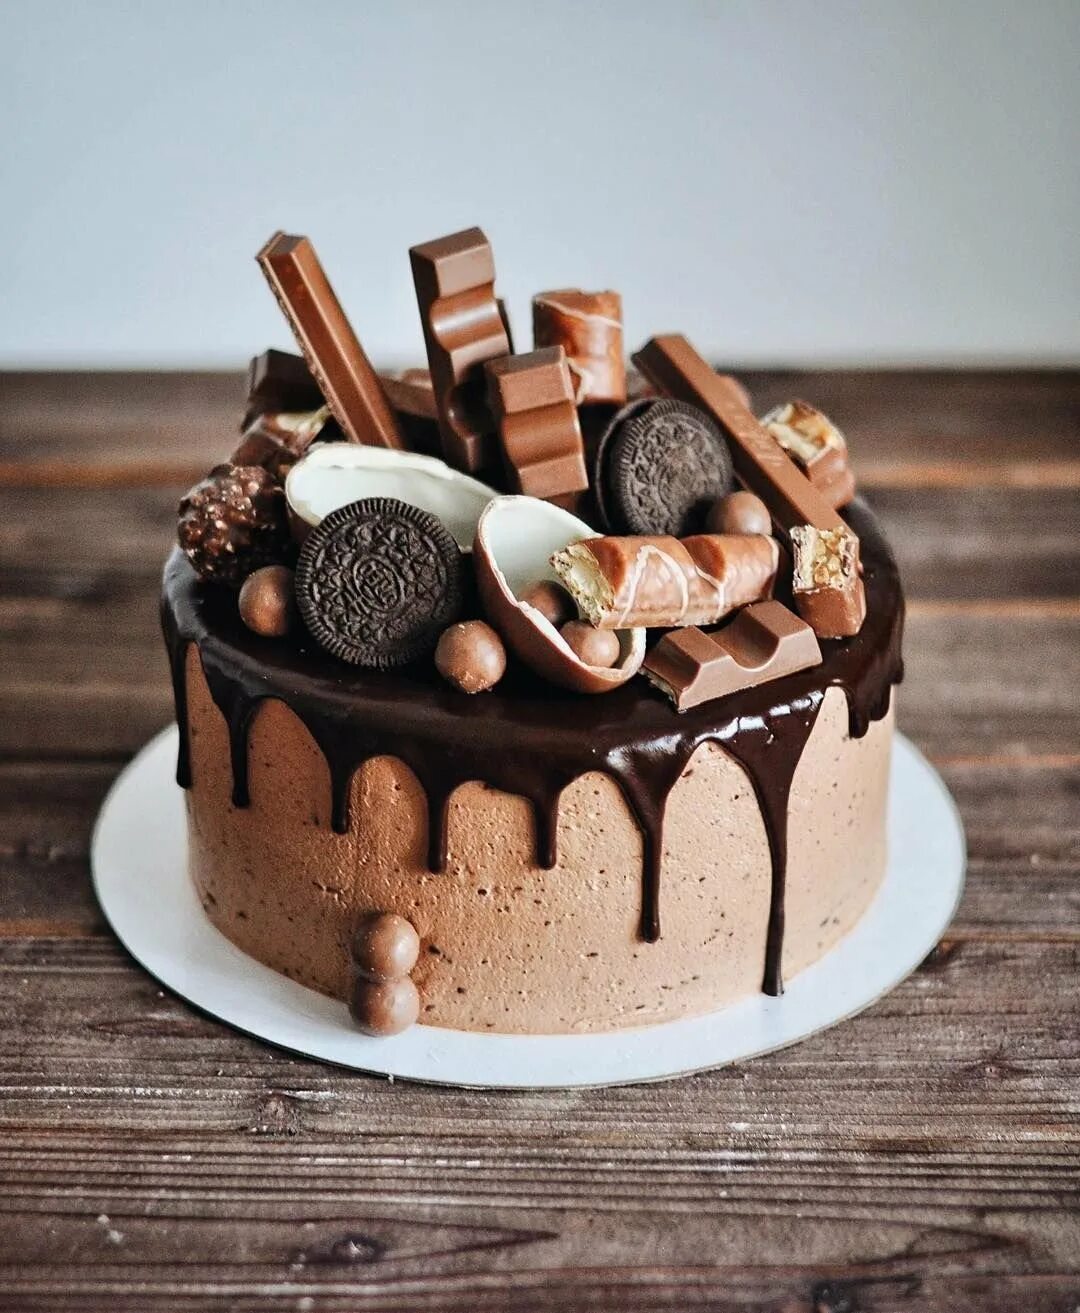 Оформление сладостями. Шоколадный торт с Орео. Торт с Орео и шоколадом. Декор торта сладостями. Украшение торта сладостями.